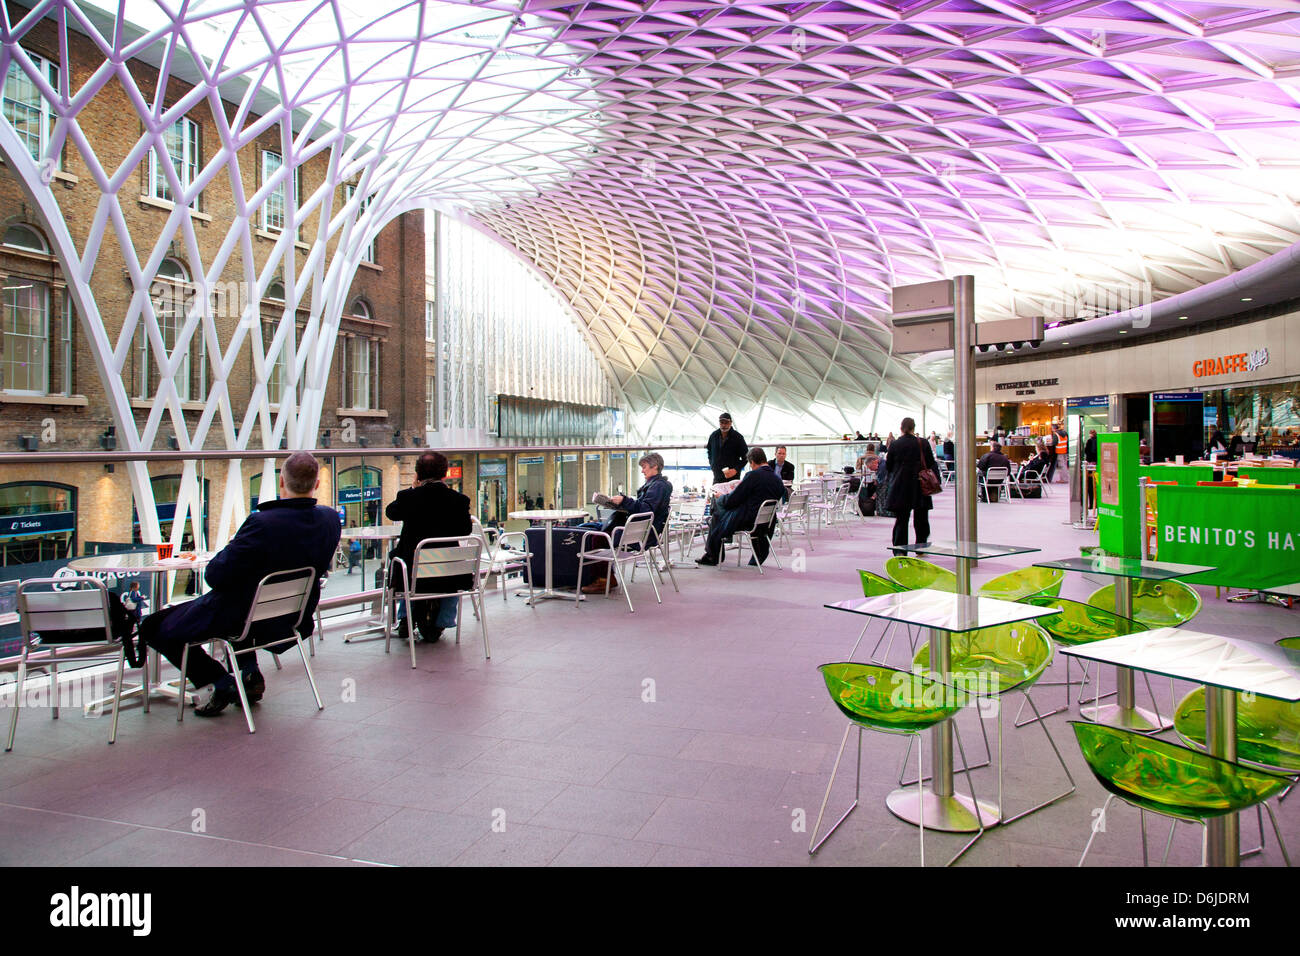 La gare de Kings Cross, Londres, Angleterre, Royaume-Uni, Europe Banque D'Images